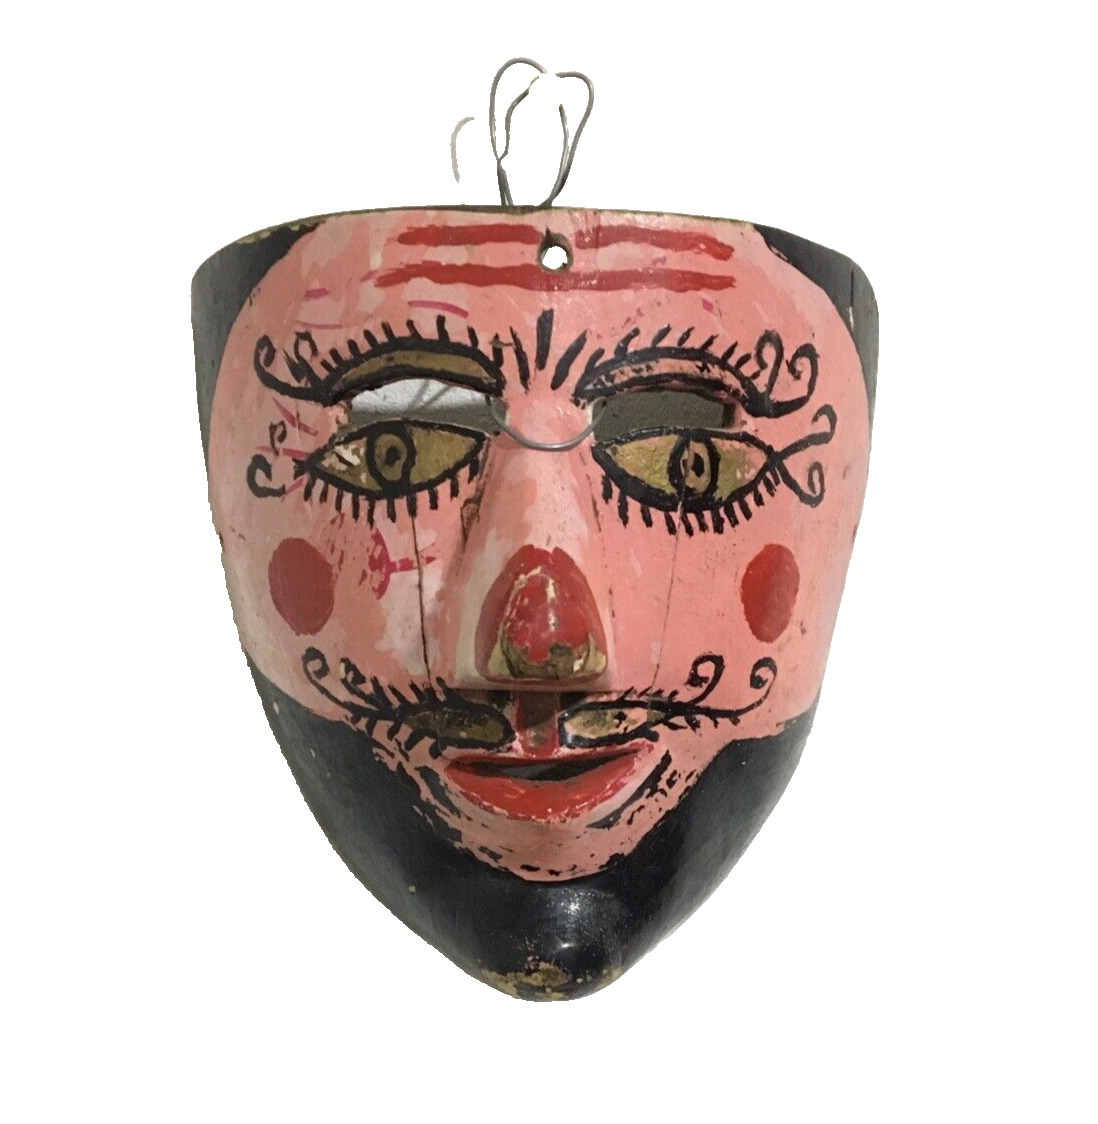 Antique Mexican Santiago or Pilato Mask, Folk Art Sierra Norte de Puebla